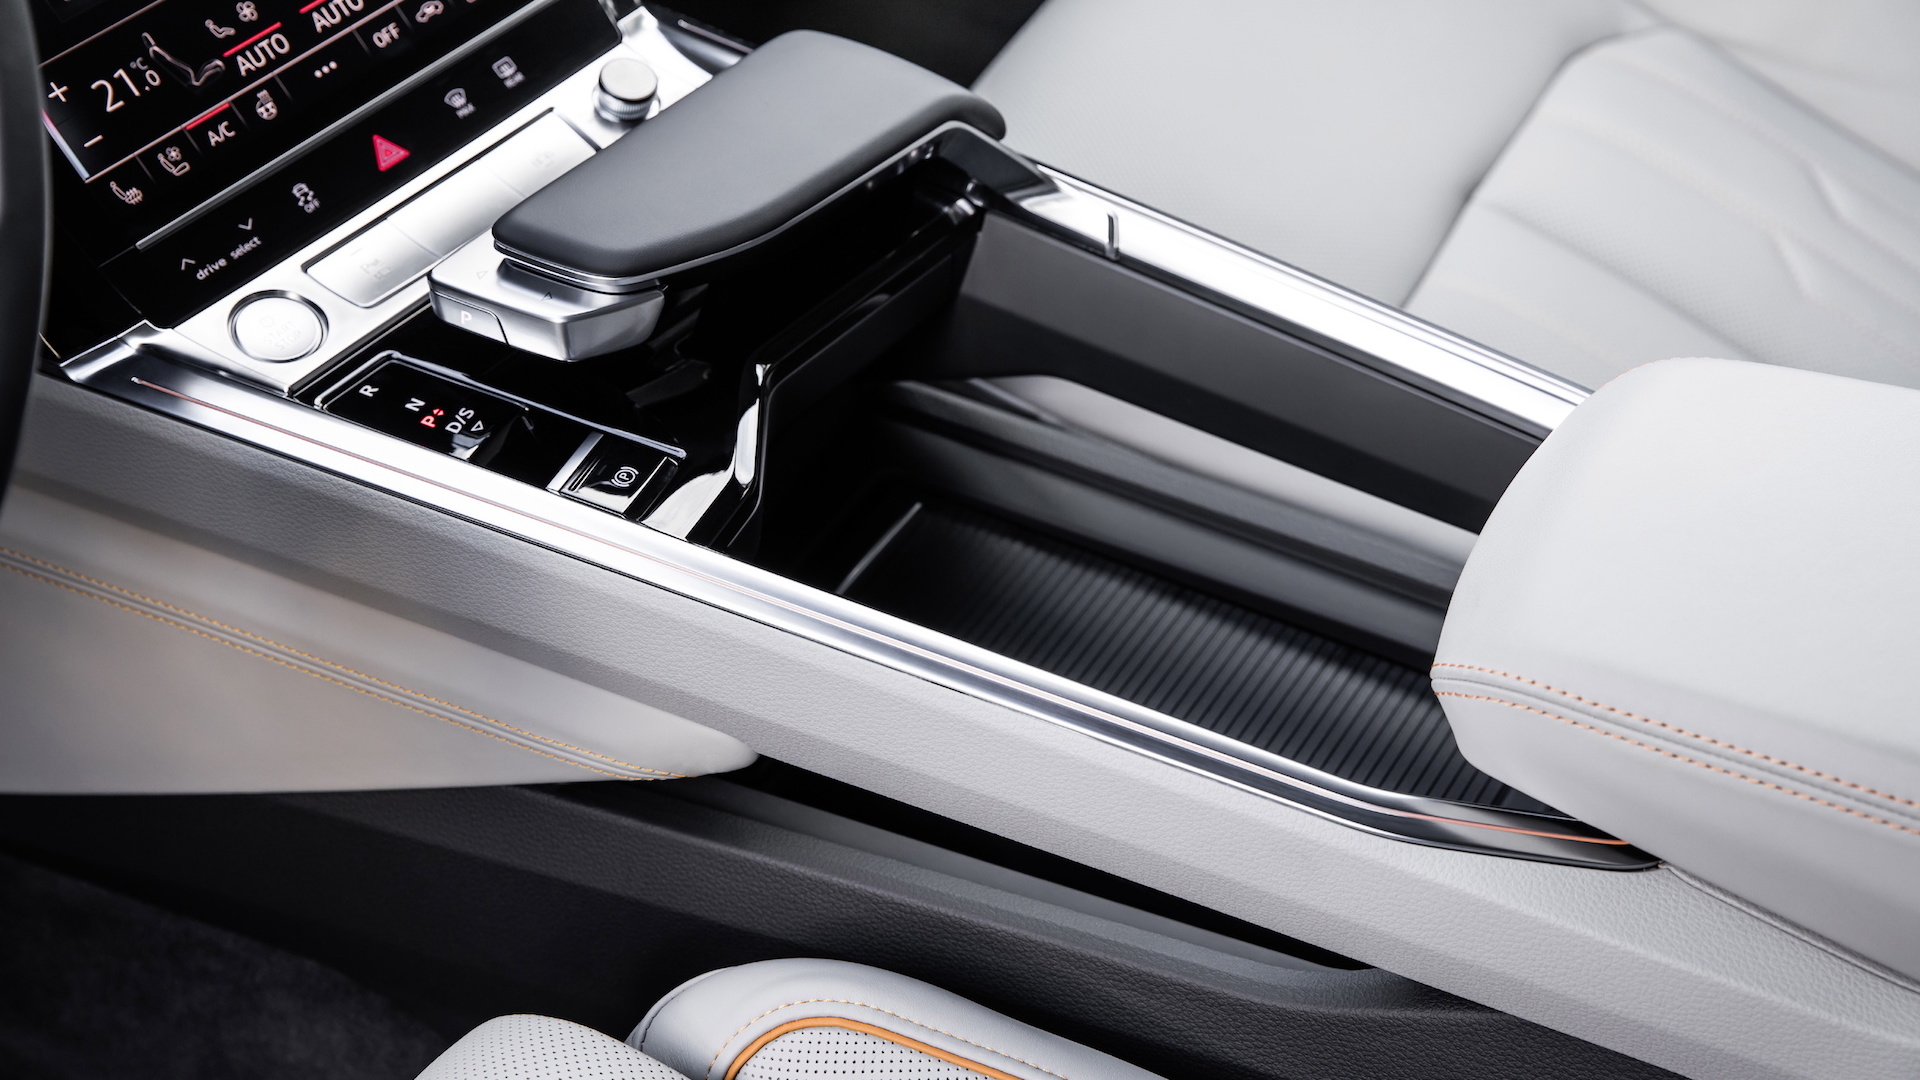 Audi e-tron electric SUV interior